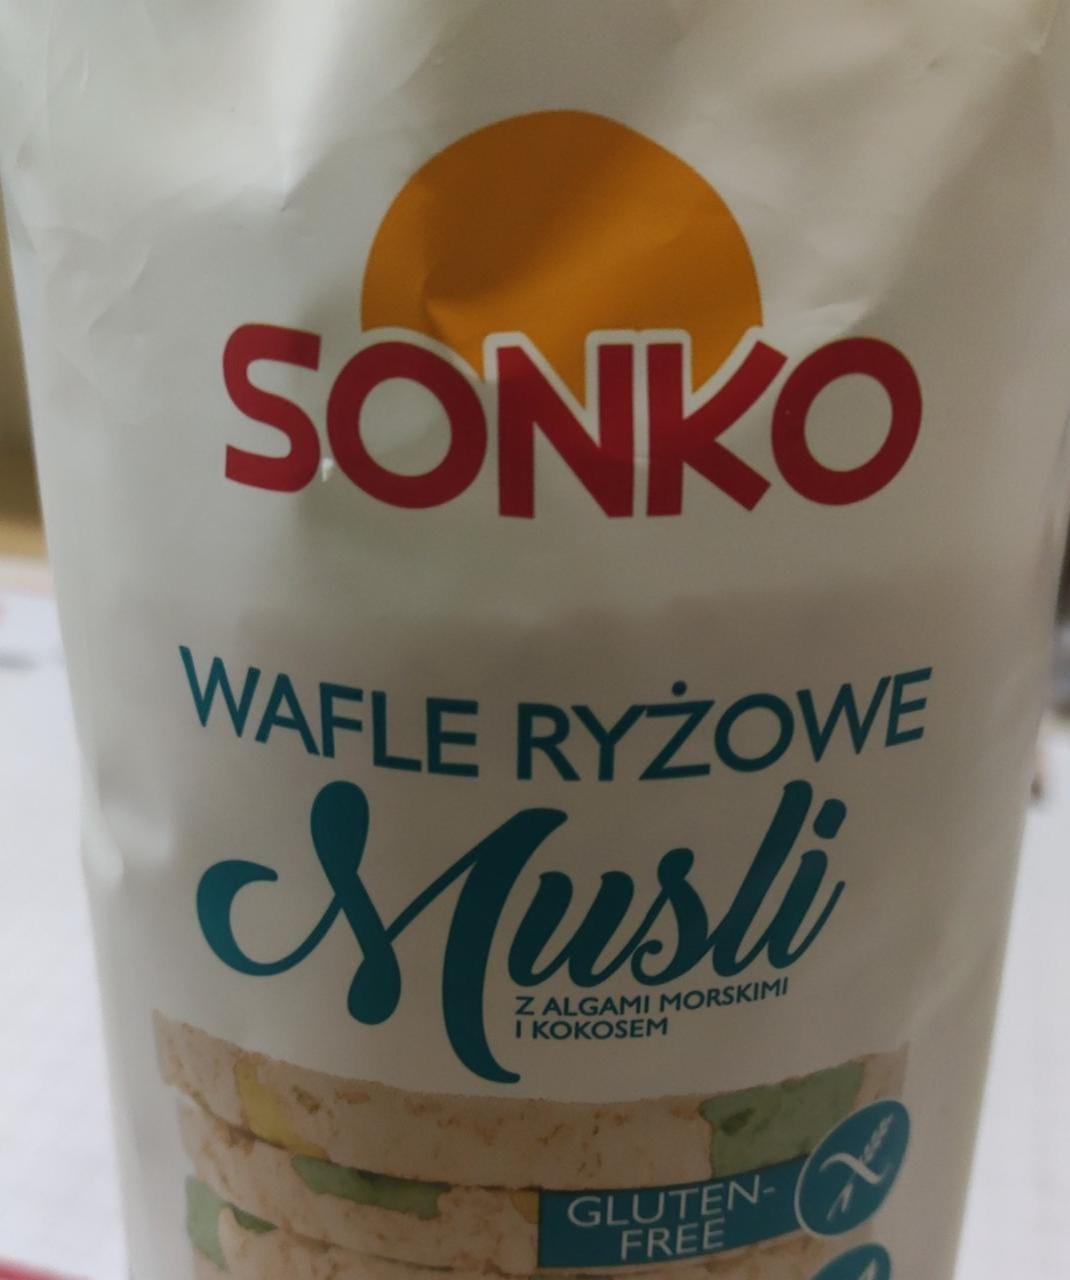 Фото - Хлебцы рисовые с морскими водорослями и кокосом Wafle Ryzowe Musli Sonko